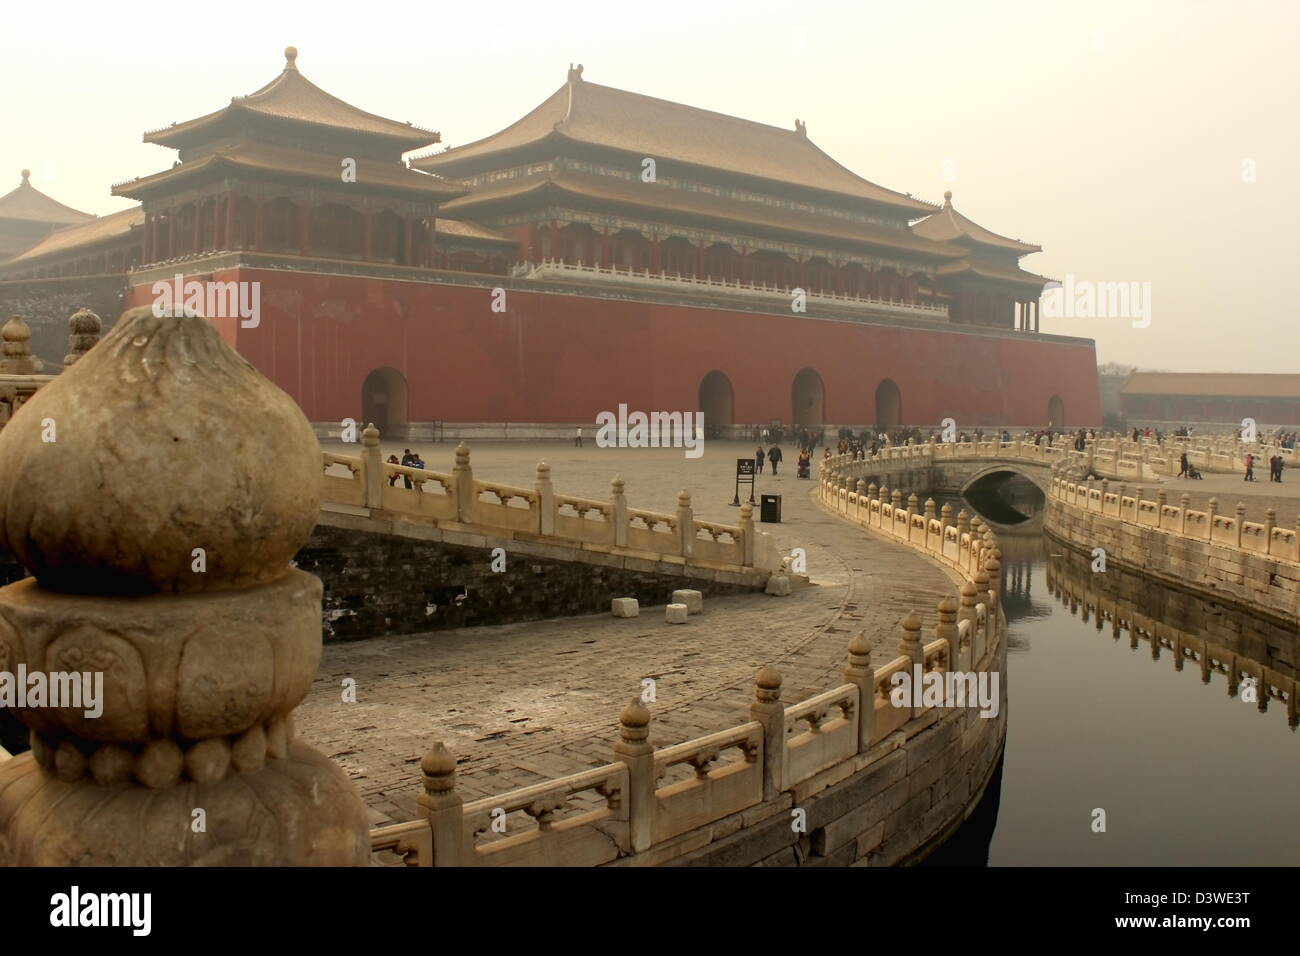 La città proibita a Pechino, Cina: vista del Meridian Gate Foto Stock